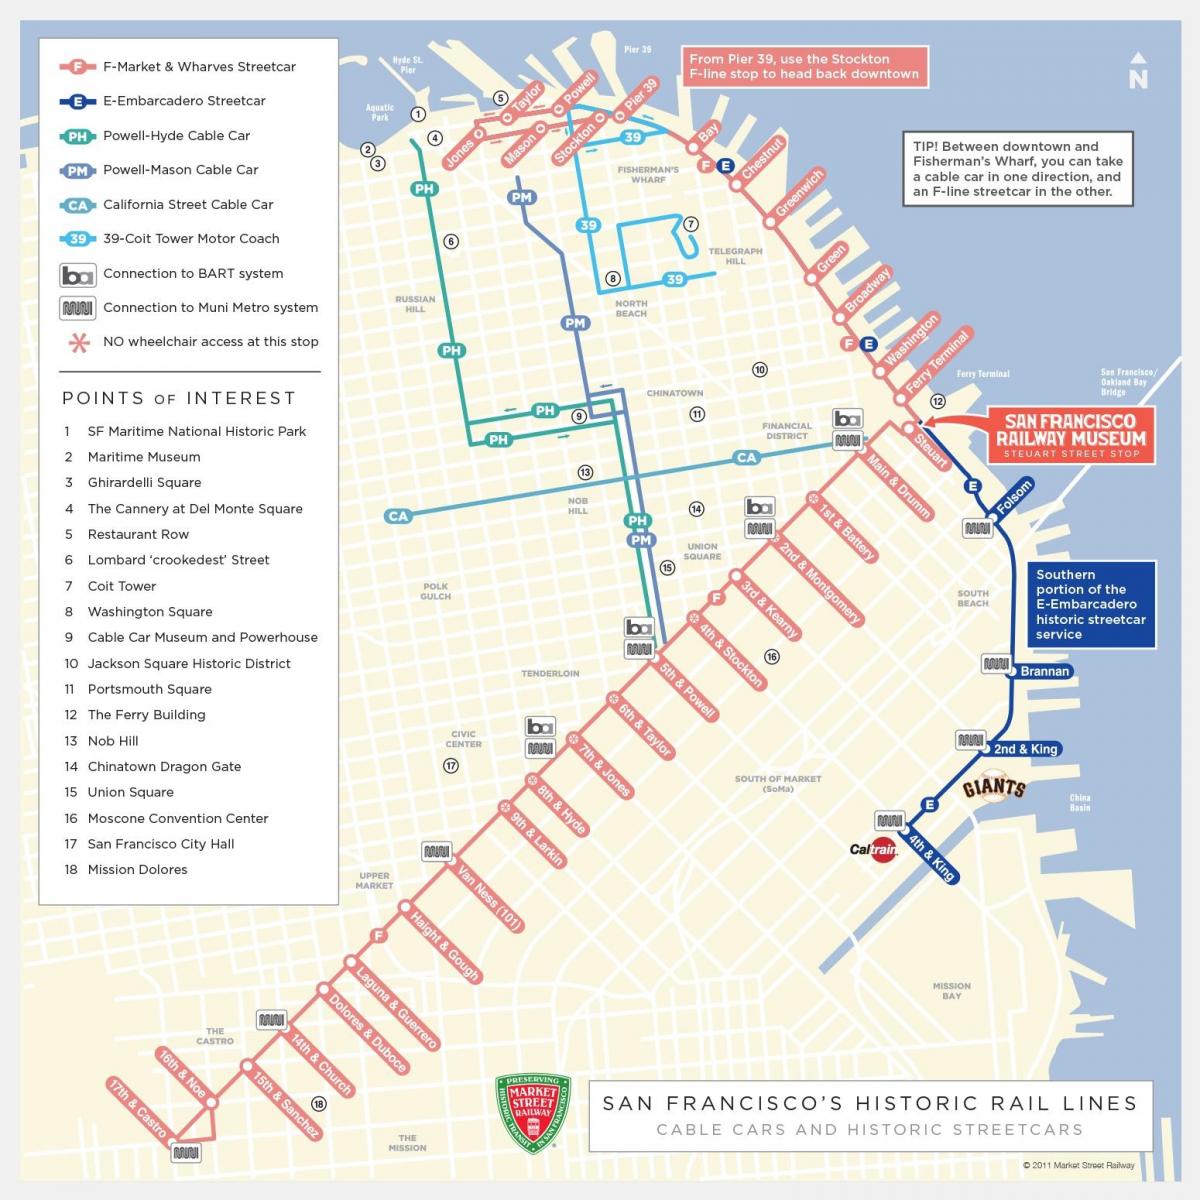 Mapa de San Francisco de la información